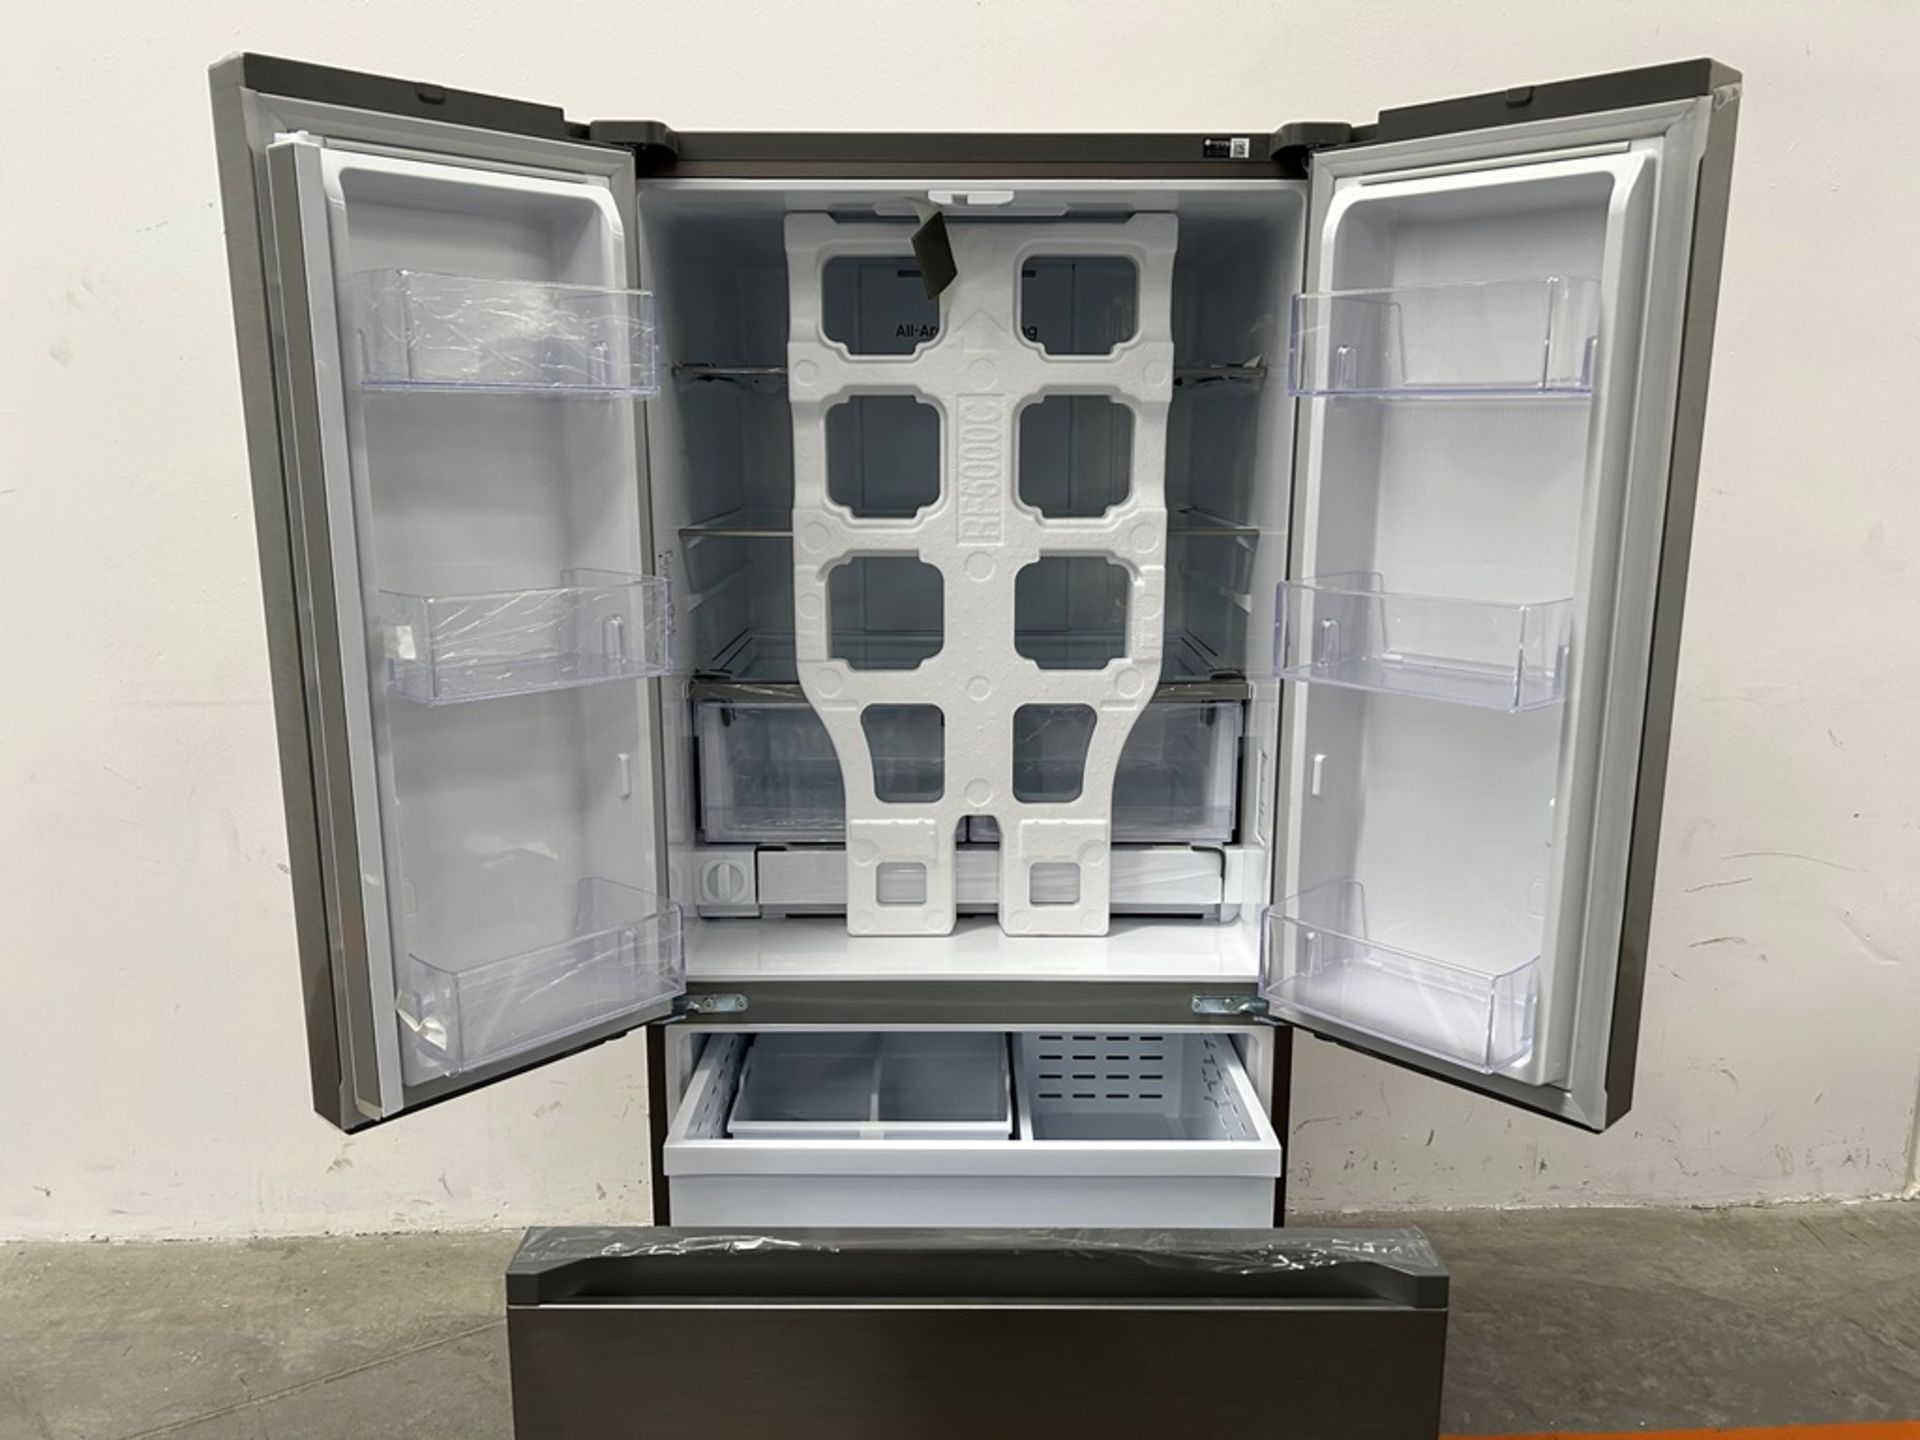 (NUEVO) Refrigerador Marca SAMSUNG, Modelo RF25C5151S9, Serie 01153L, Color GRIS - Image 4 of 11